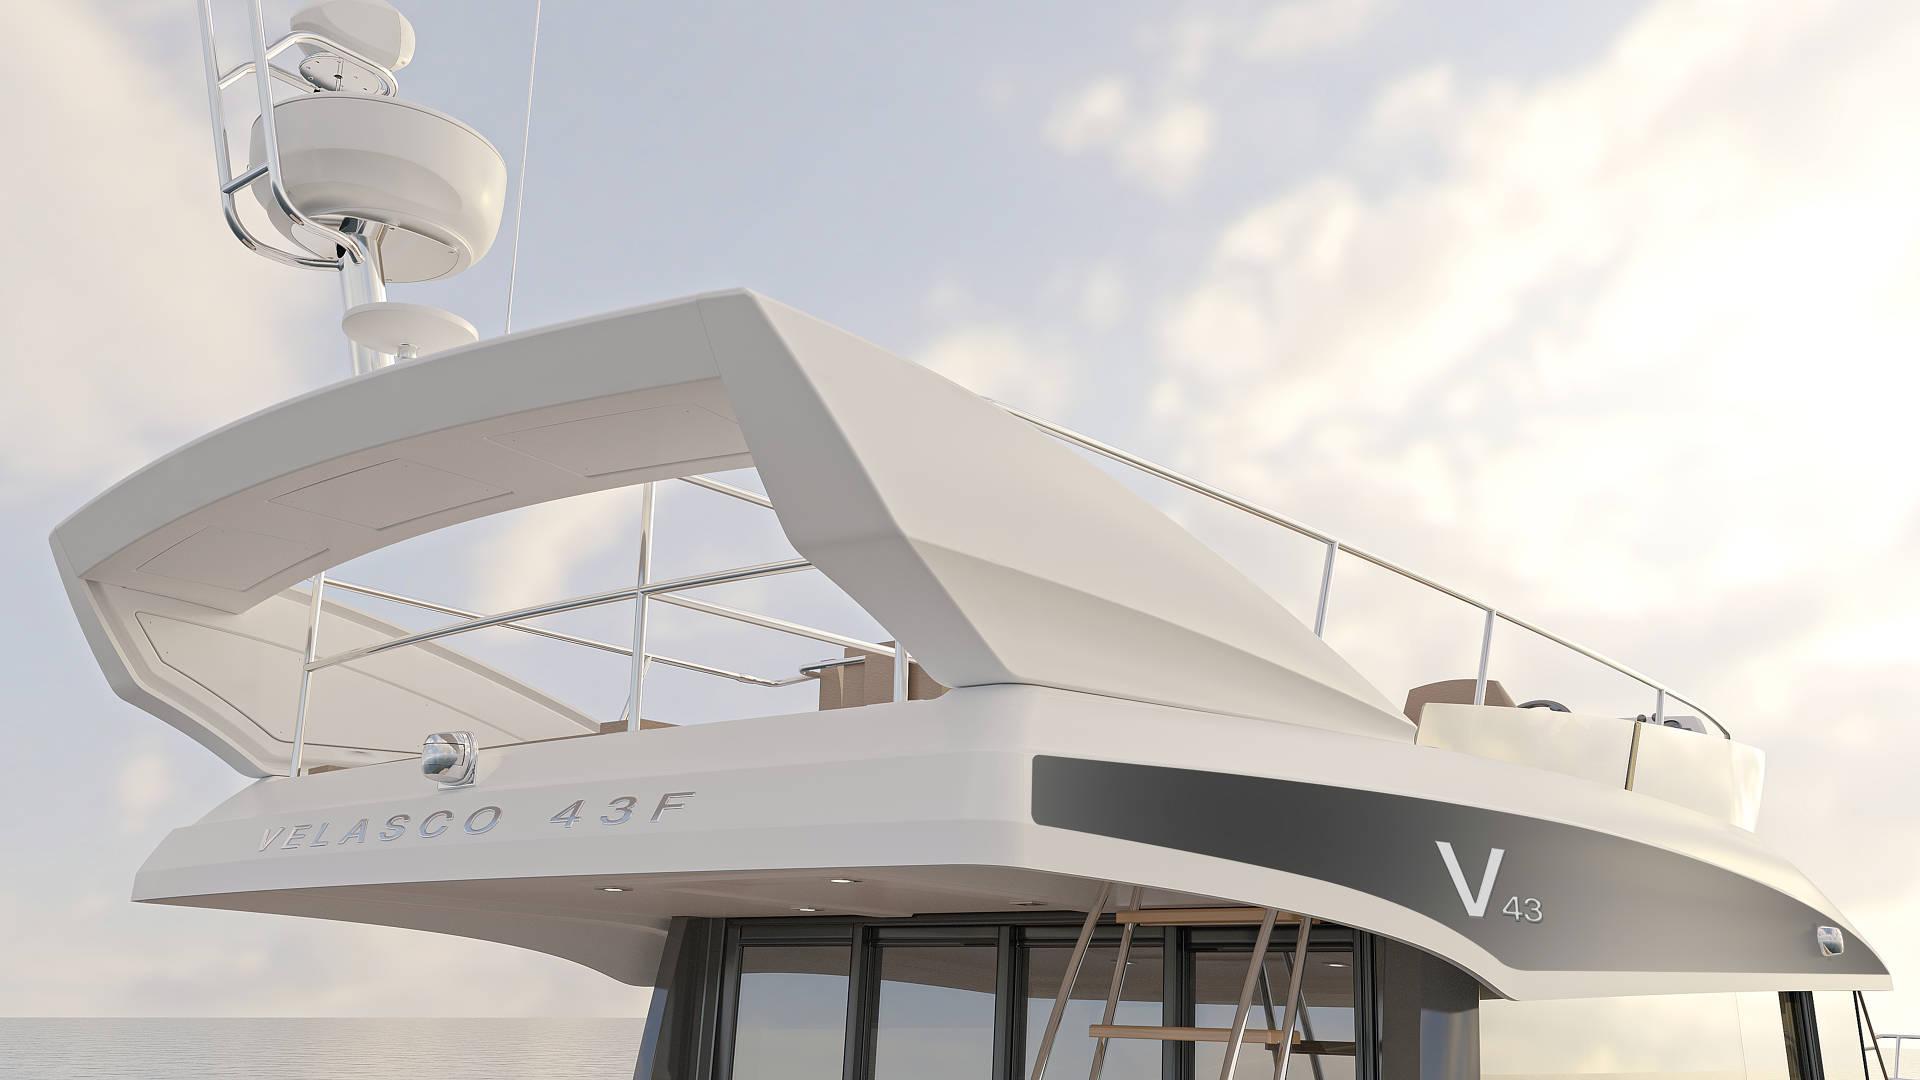 Du thuyền Velasco 43F - Dịch vụ thuê du thuyền cá nhân